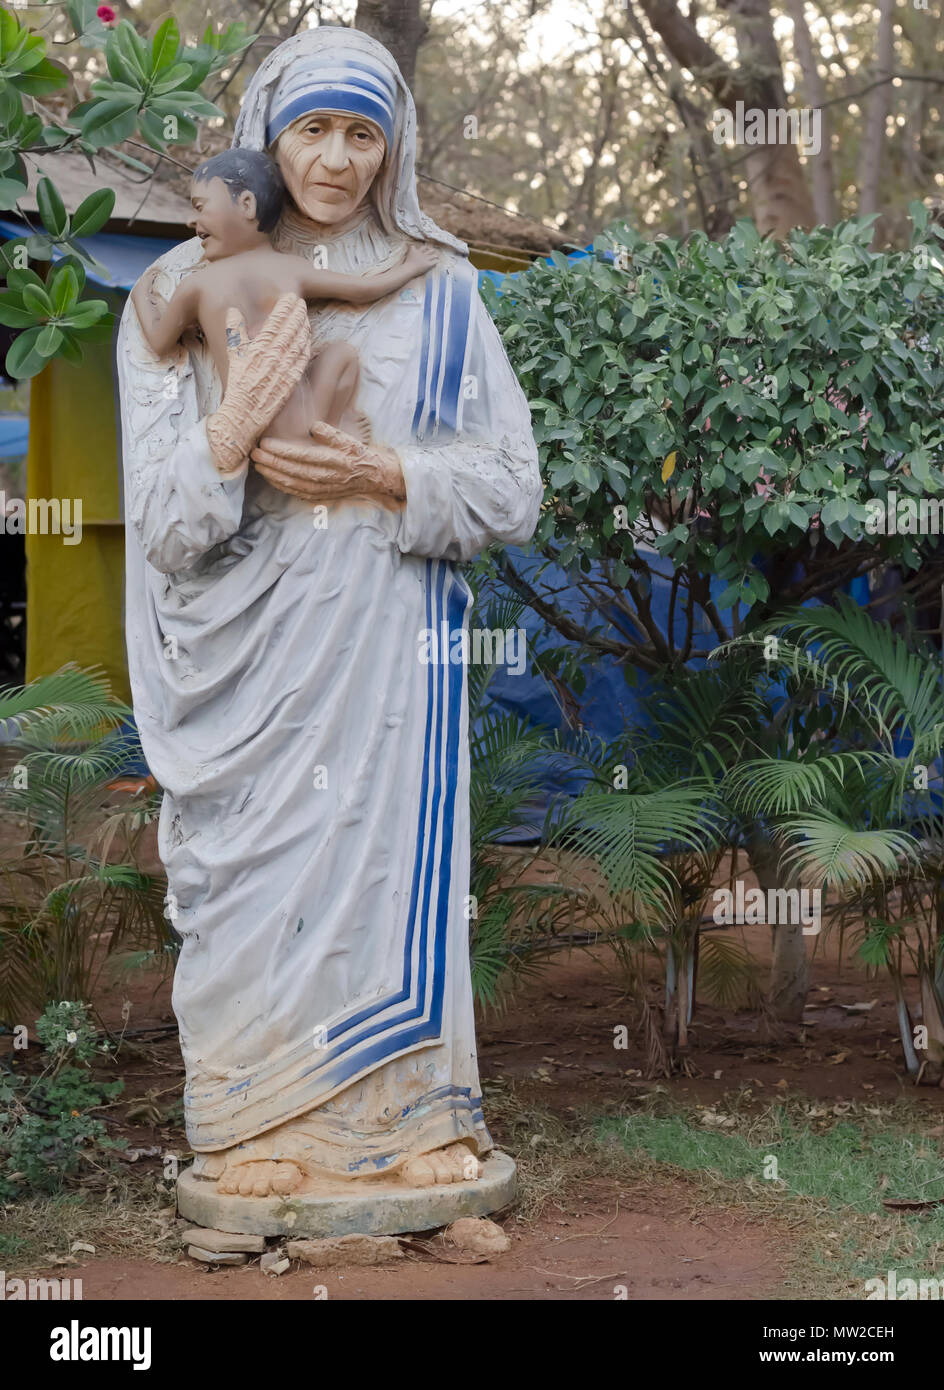 Une statue d'argile altérée de Mère Teresa, fondatrice des Missionnaires de la Charité, au village des arts et métiers Shilparamam, Hyderabad, Inde, Telangana. Banque D'Images